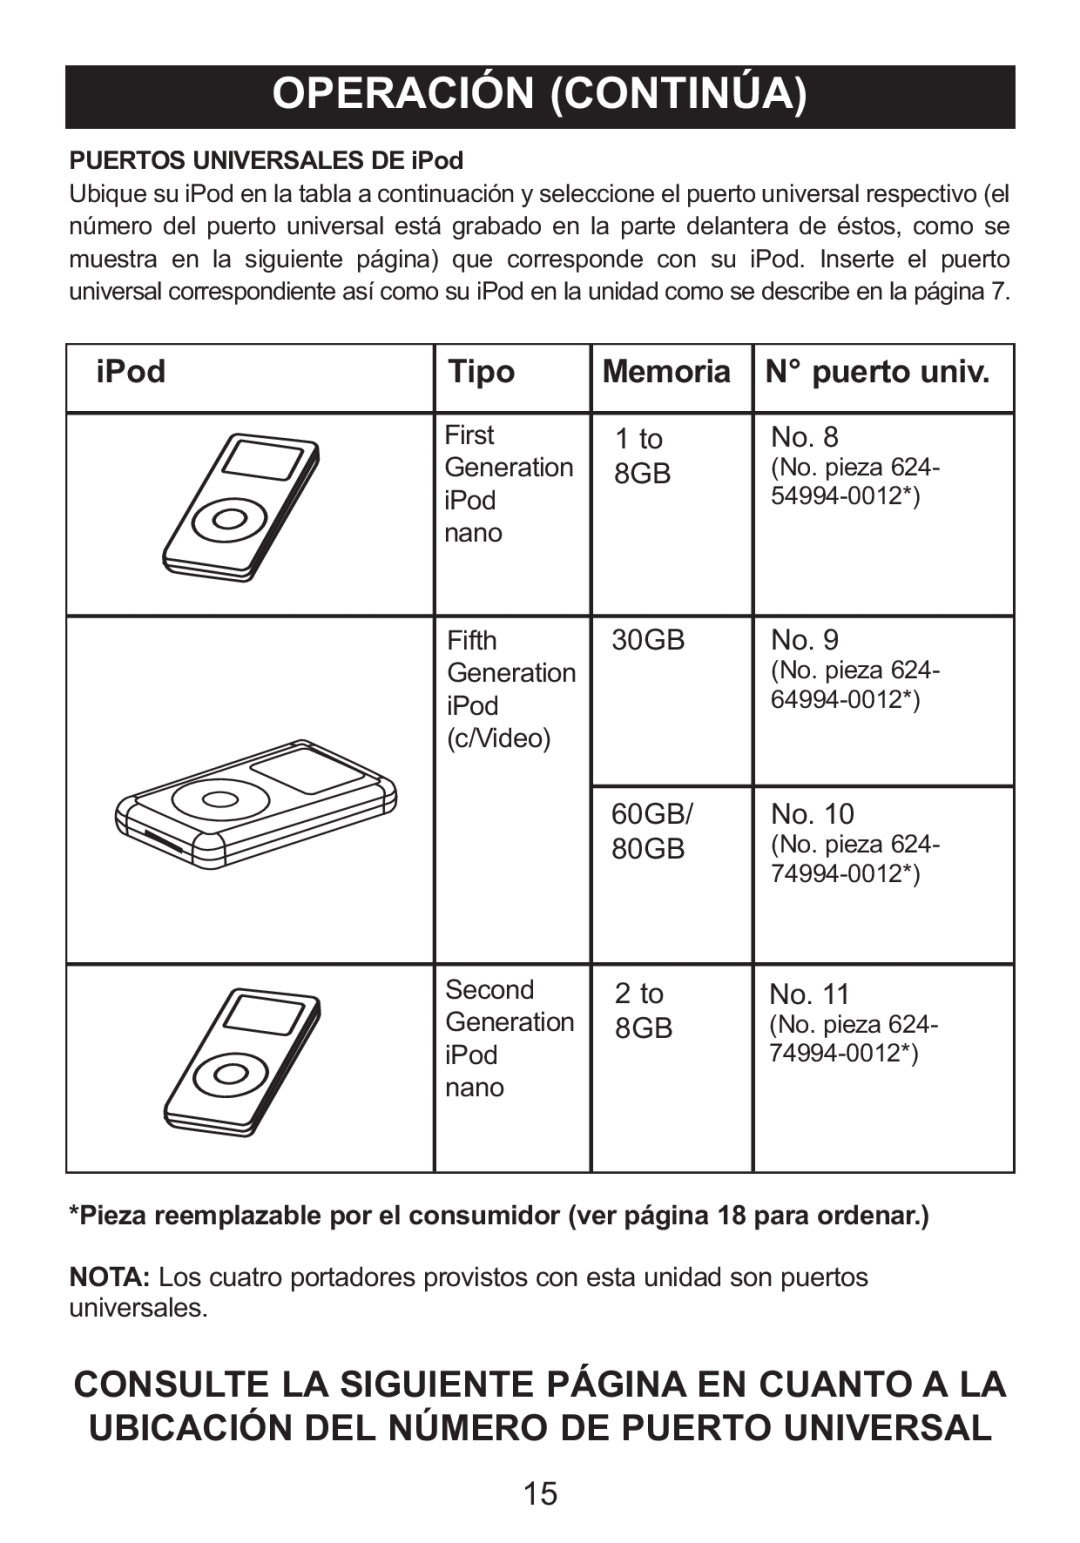 Memorex M12001 manual Tipo, Memoria, N puerto univ, PUERTOS UNIVERSALES DE iPod 